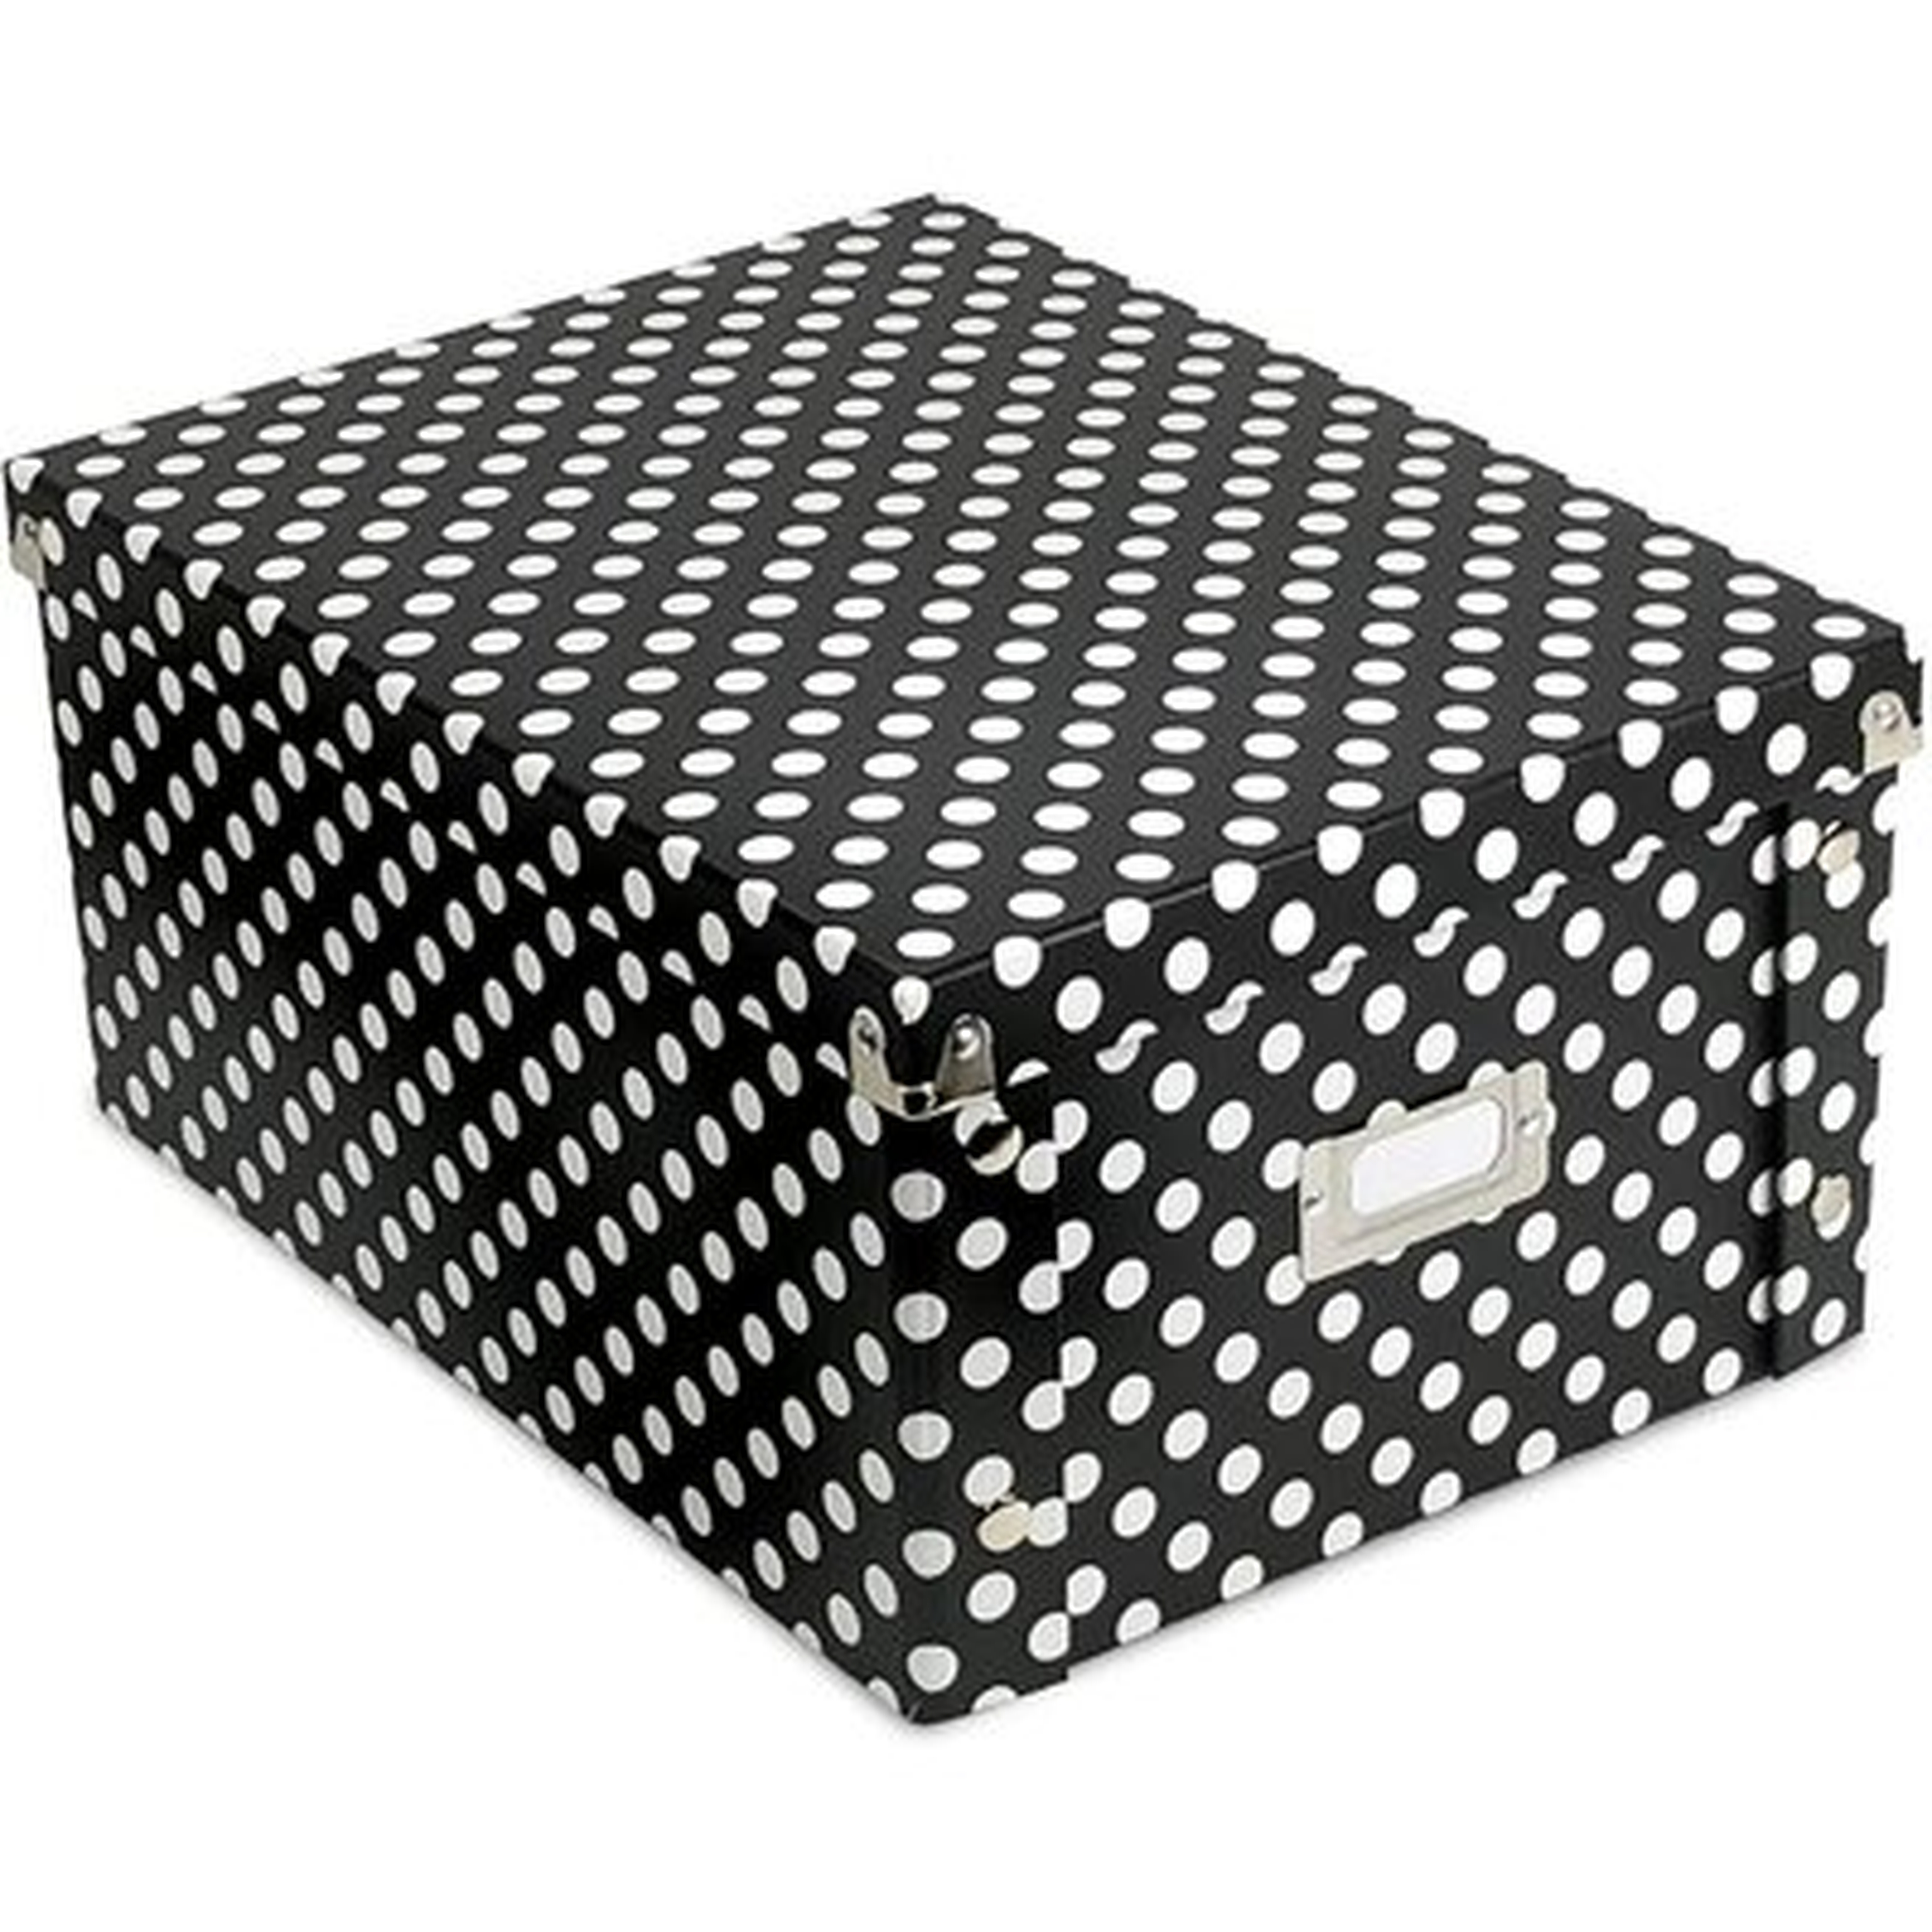 Polka Dot Cardboard Box - Wayfair